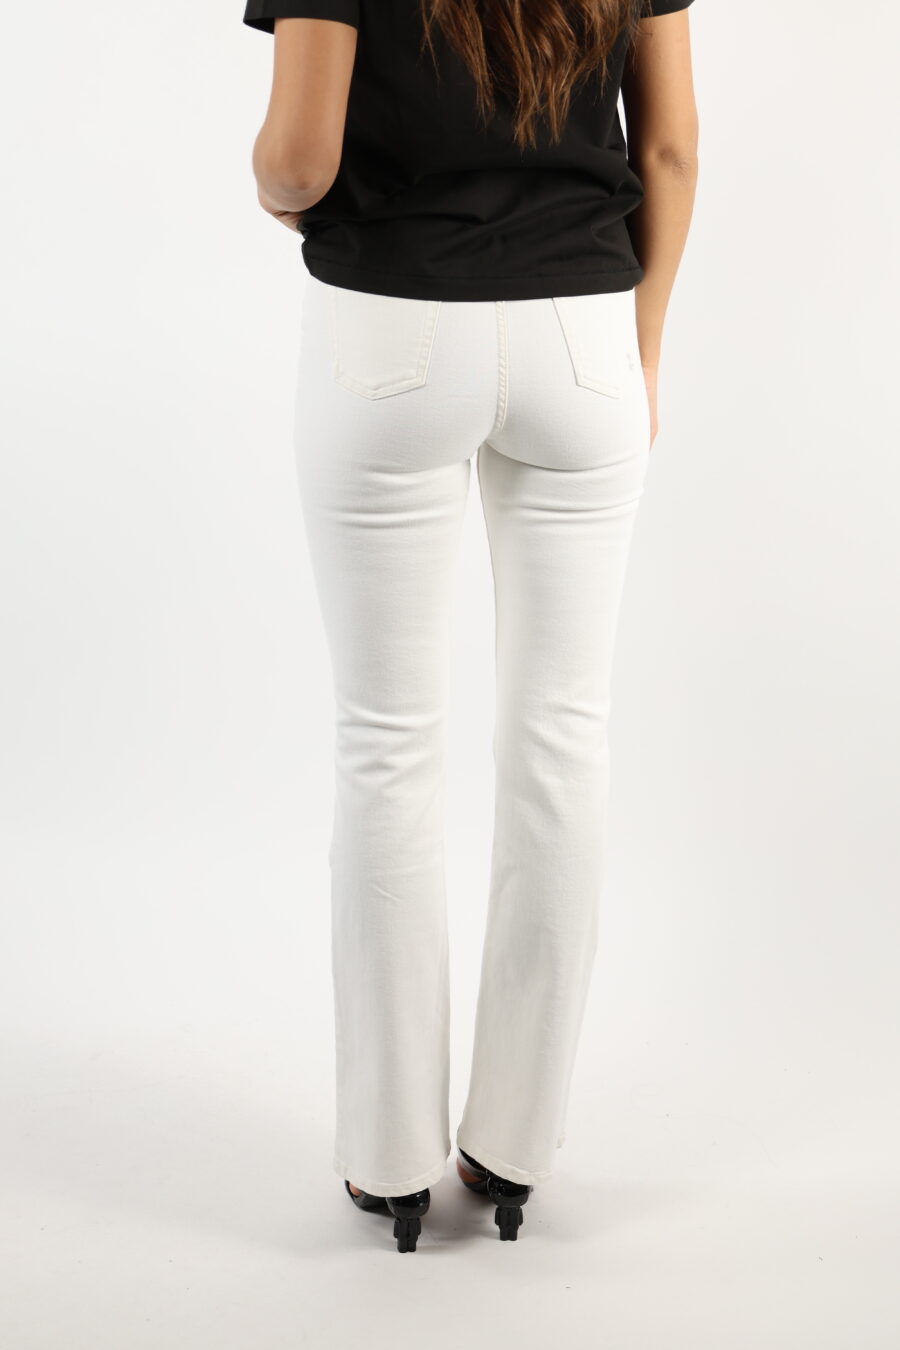 Pantalón blanco "Natie" con etiqueta fucsia - 110674